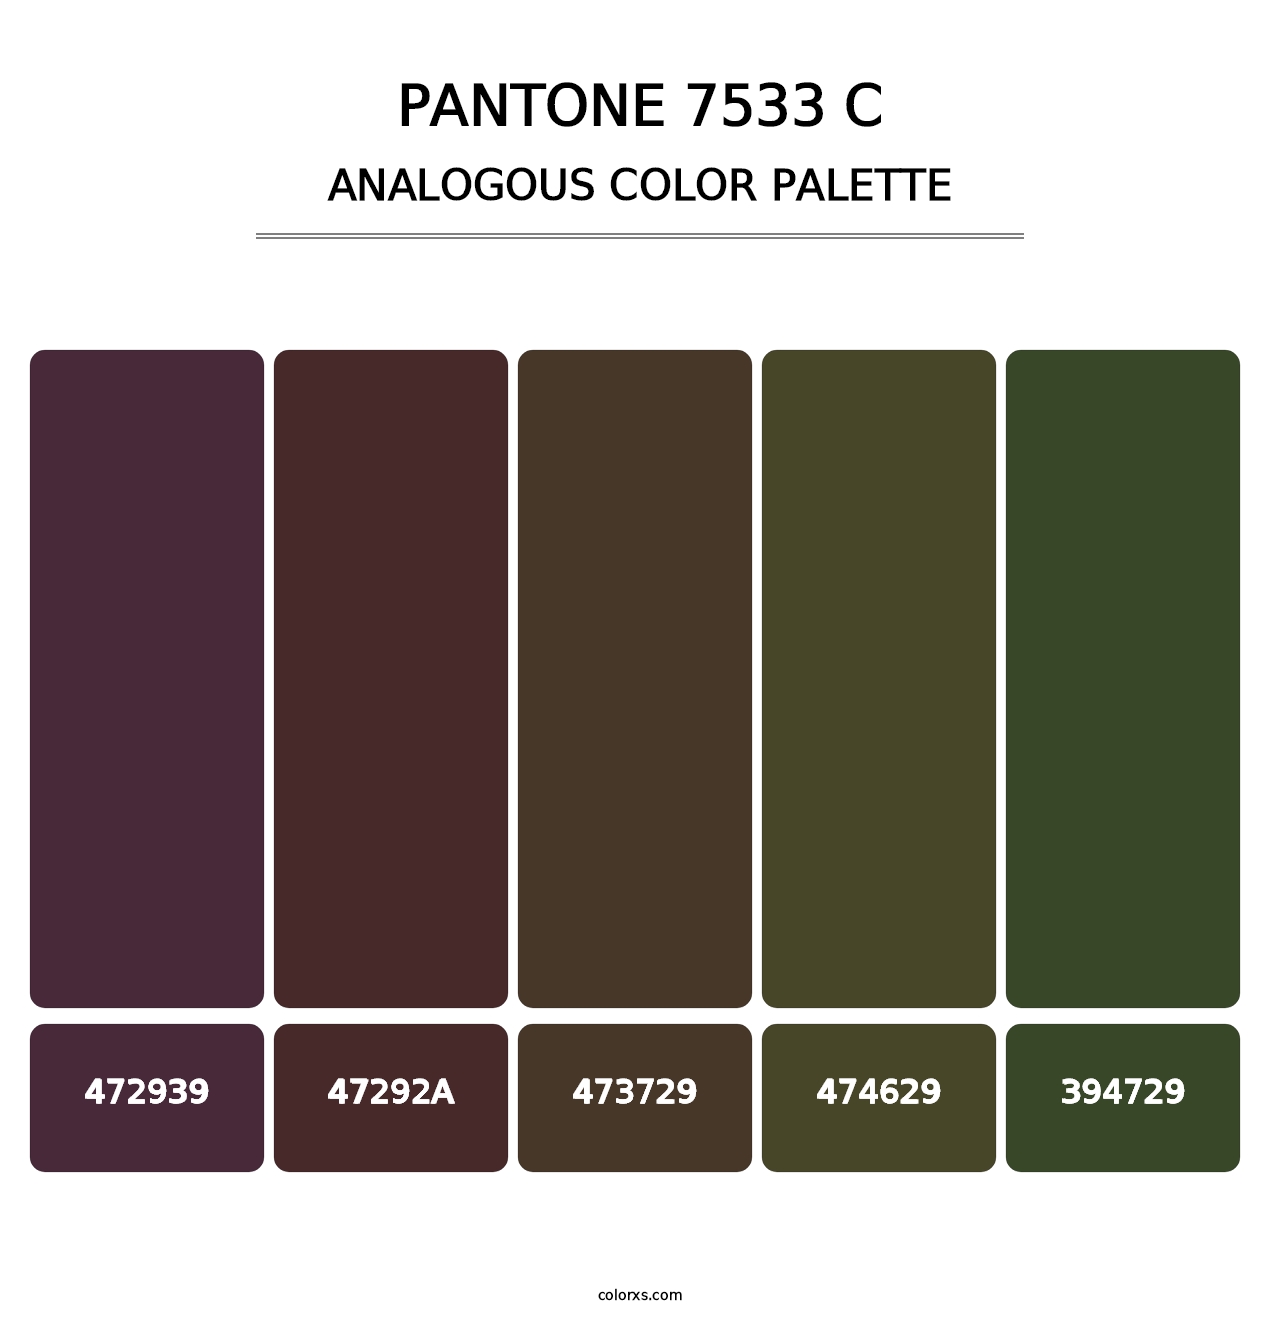 PANTONE 7533 C - Analogous Color Palette